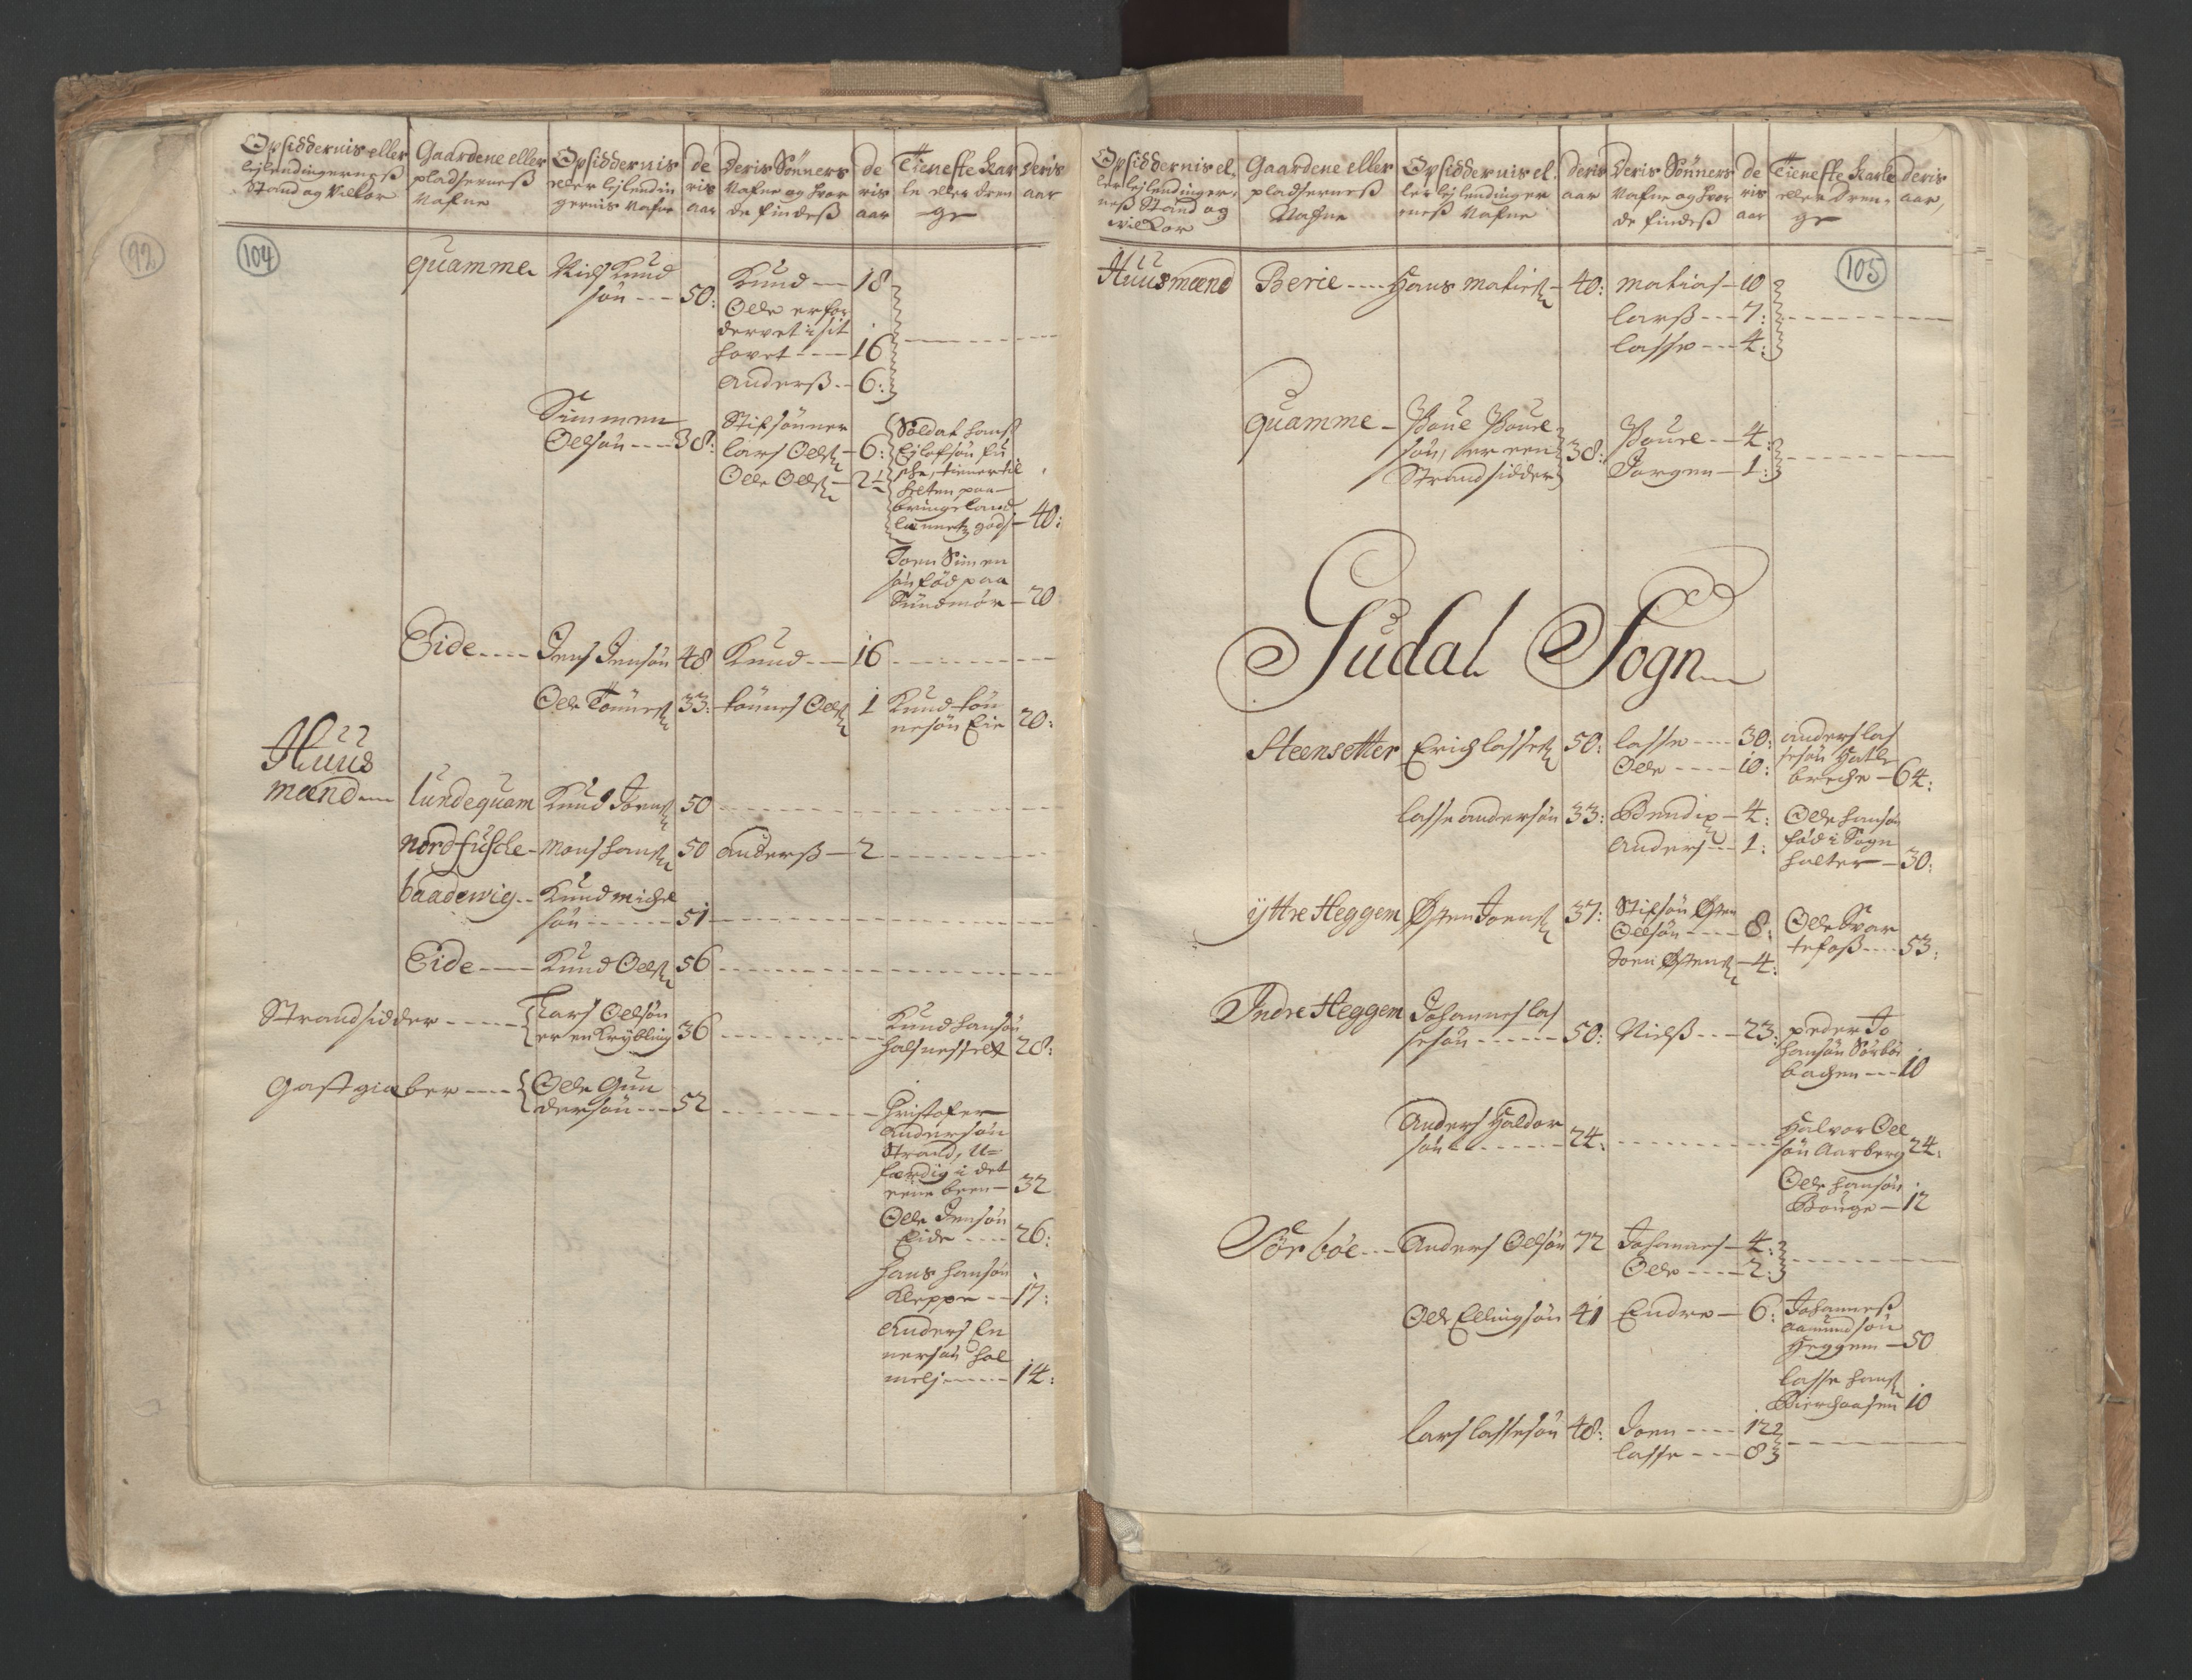 RA, Census (manntall) 1701, no. 9: Sunnfjord fogderi, Nordfjord fogderi and Svanø birk, 1701, p. 104-105